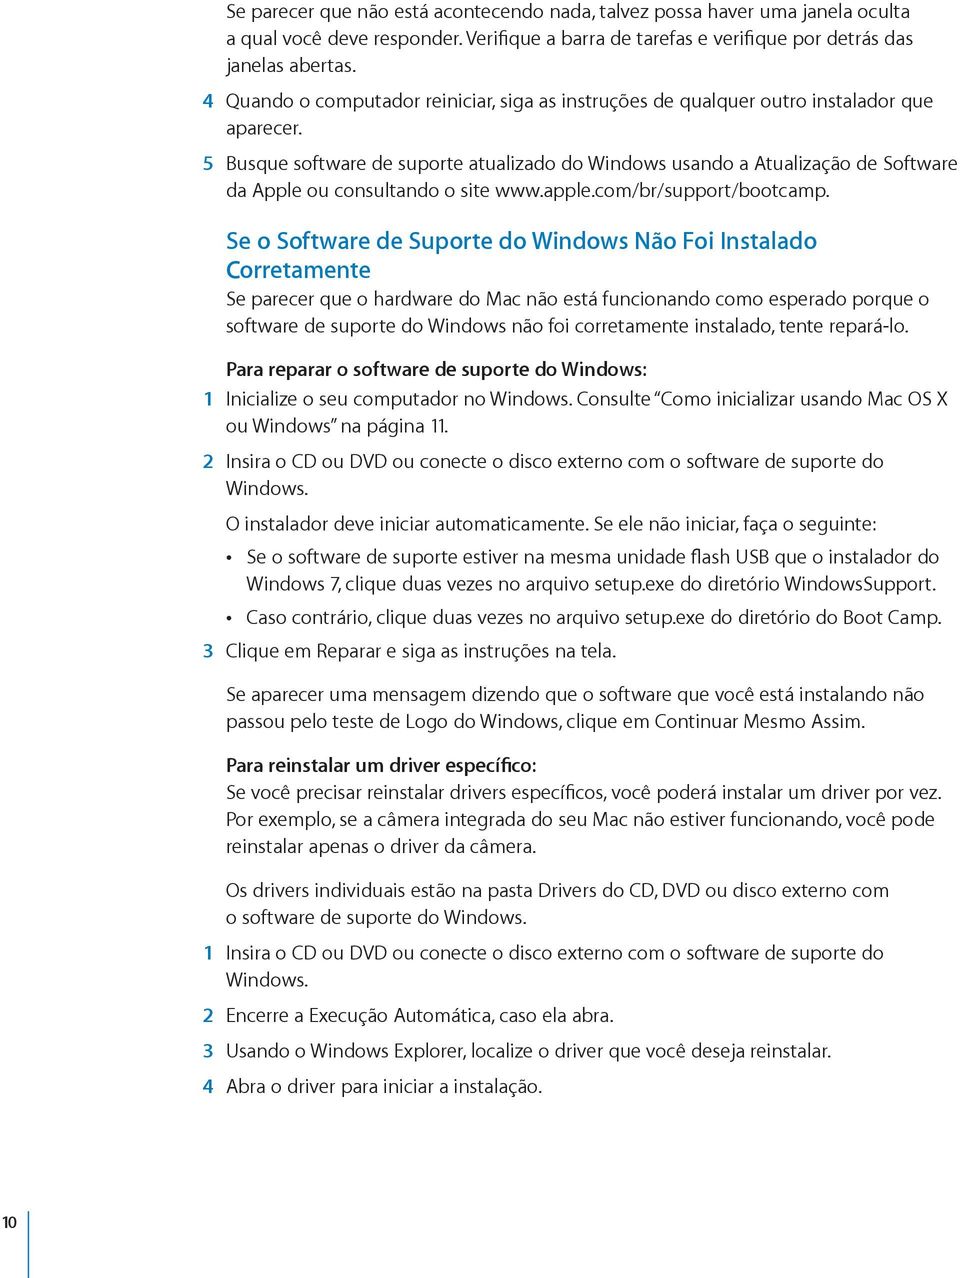 5 Busque software de suporte atualizado do Windows usando a Atualização de Software da Apple ou consultando o site www.apple.com/br/support/bootcamp.